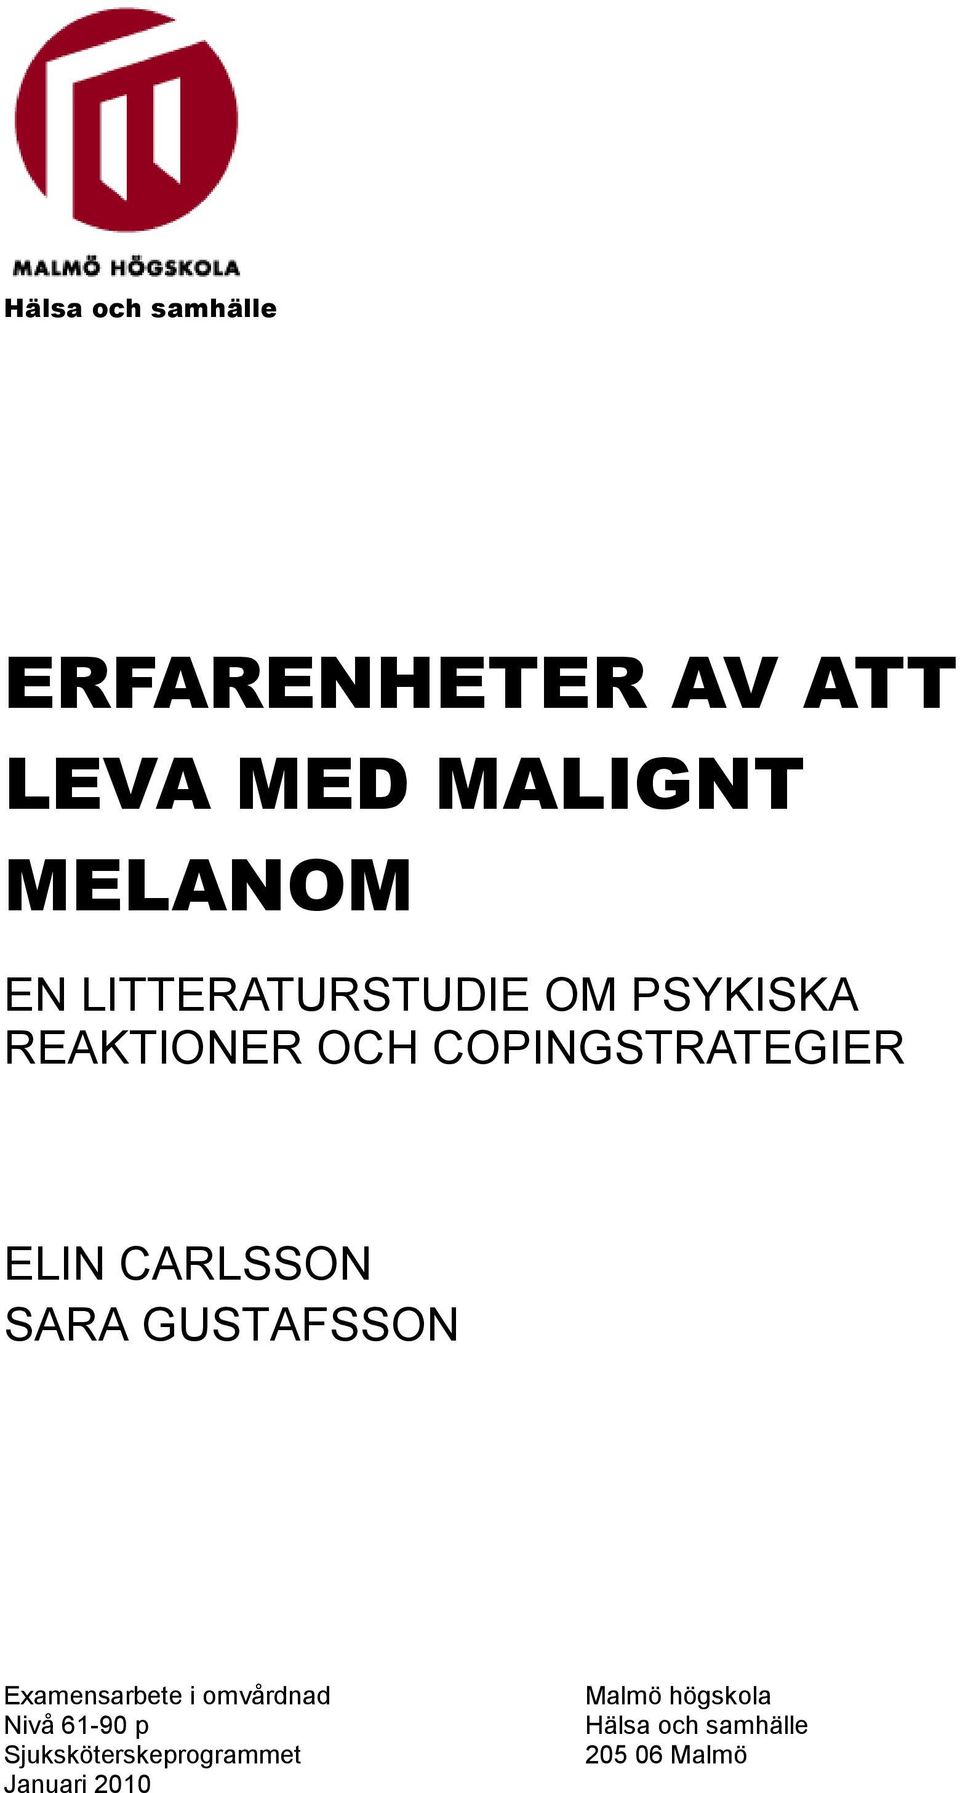 CARLSSON SARA GUSTAFSSON Examensarbete i omvårdnad Nivå 61-90 p